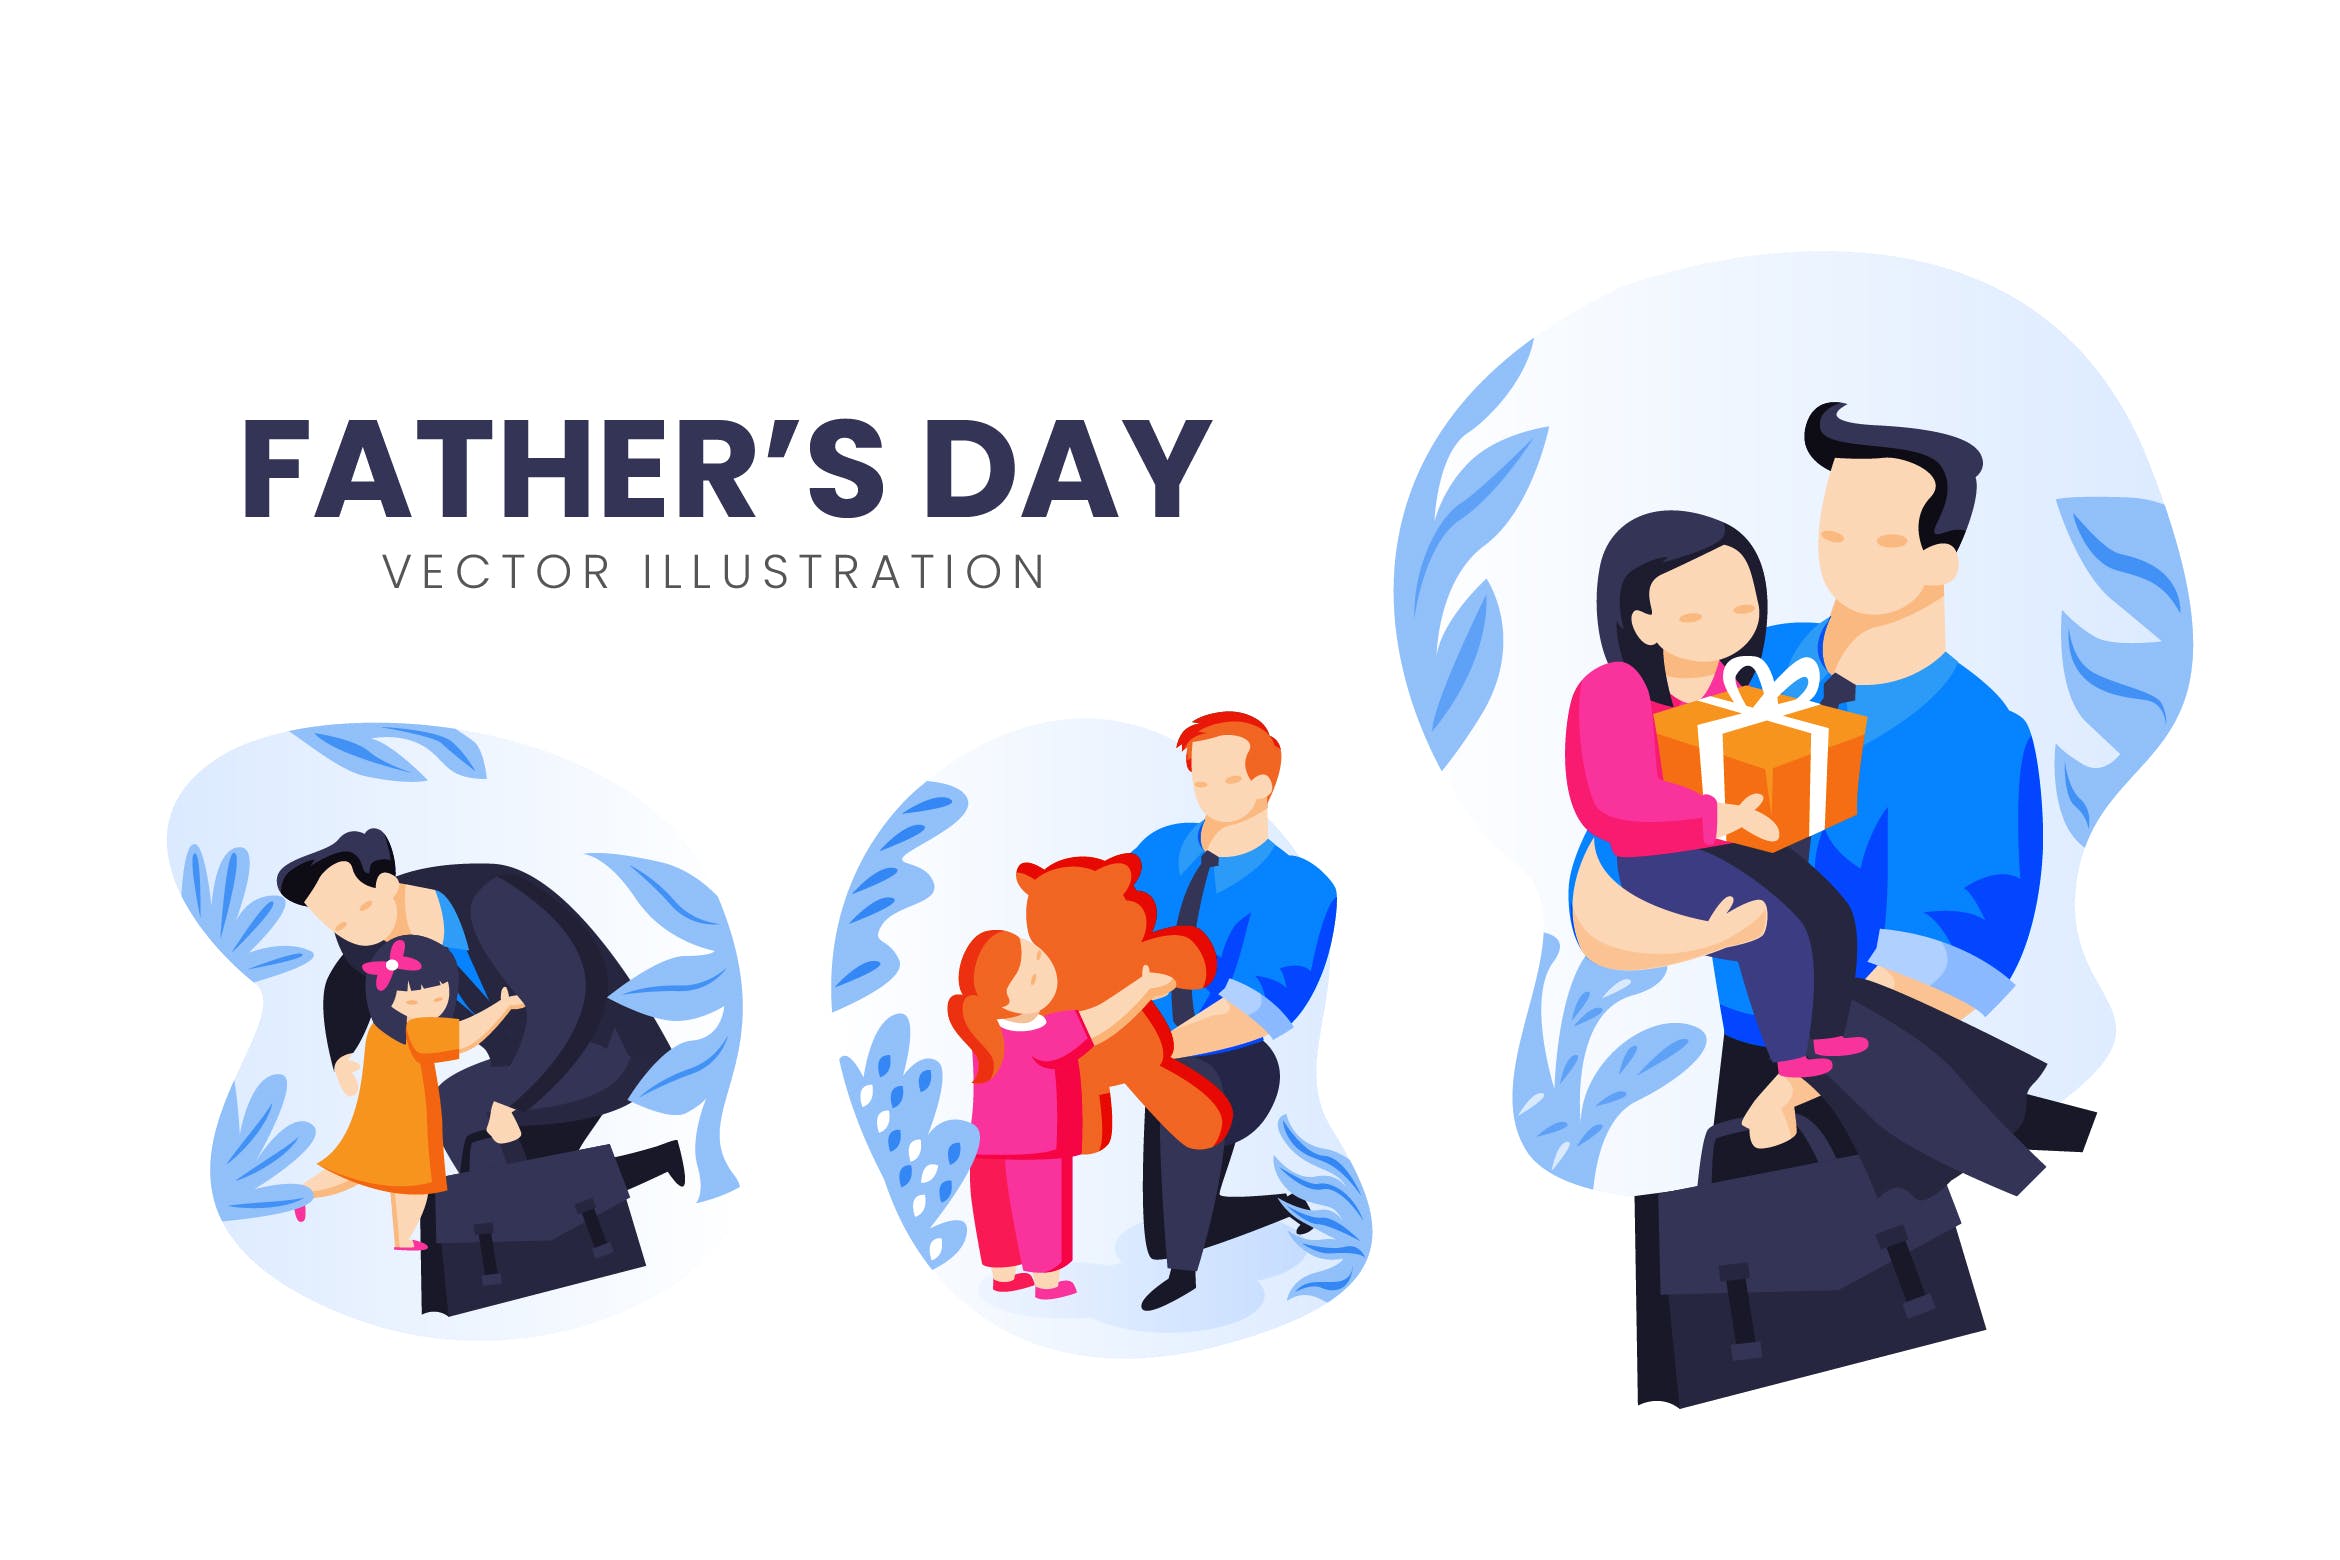 父亲节主题人物形象16图库精选手绘插画矢量素材 Fathers Day Vector Character Set插图